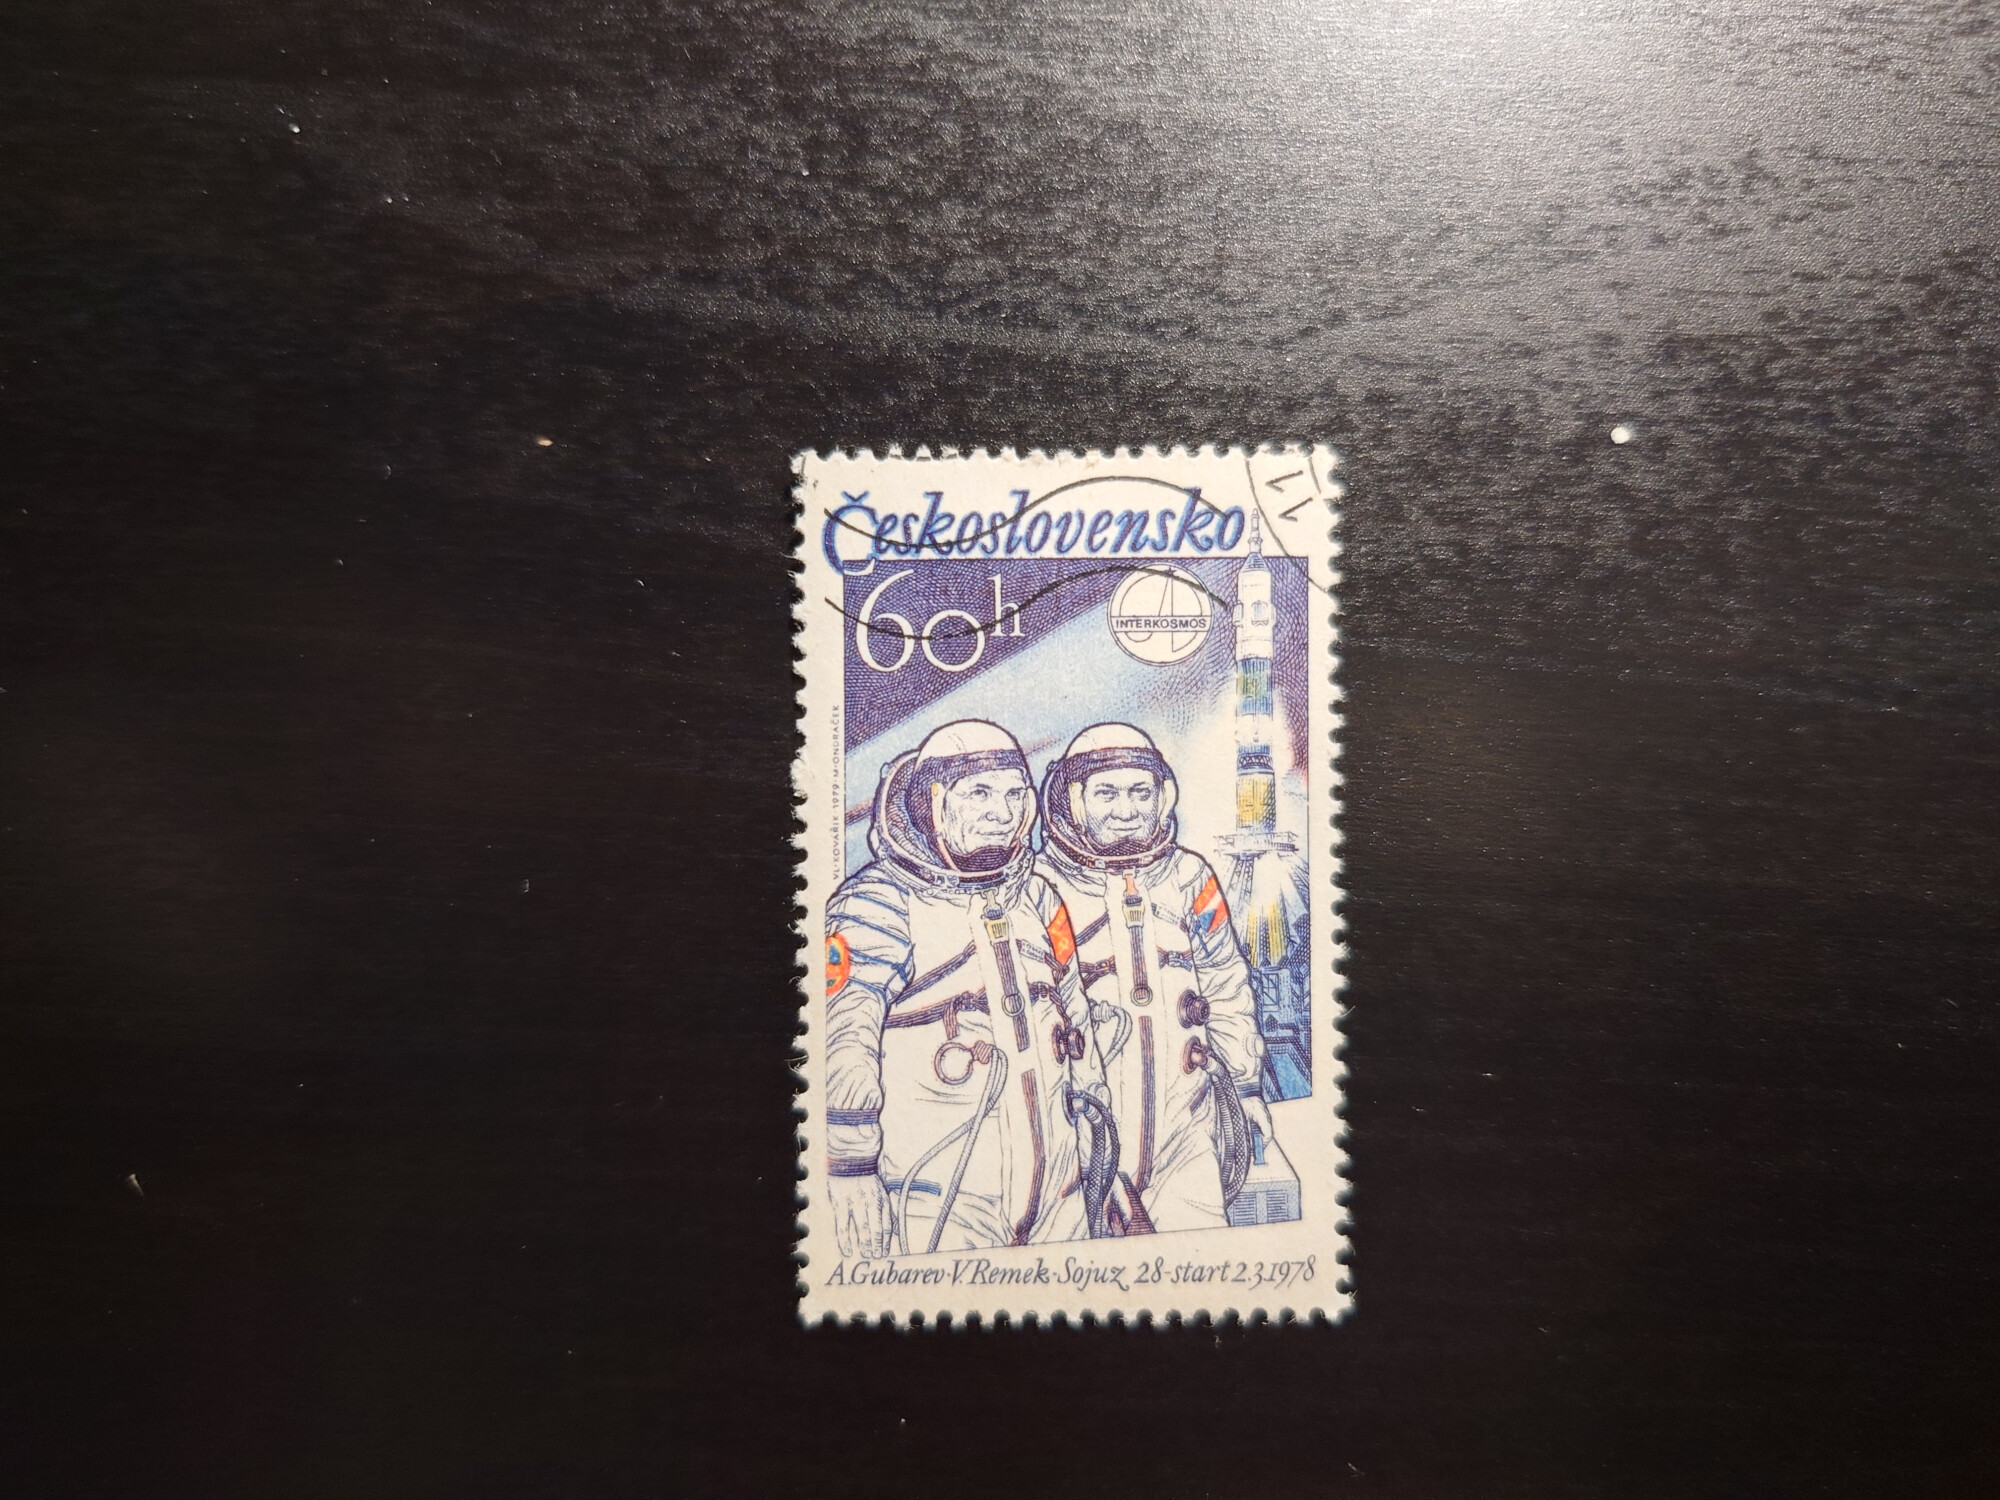  Ceskoslovensko Soyuz 28 (60 h)